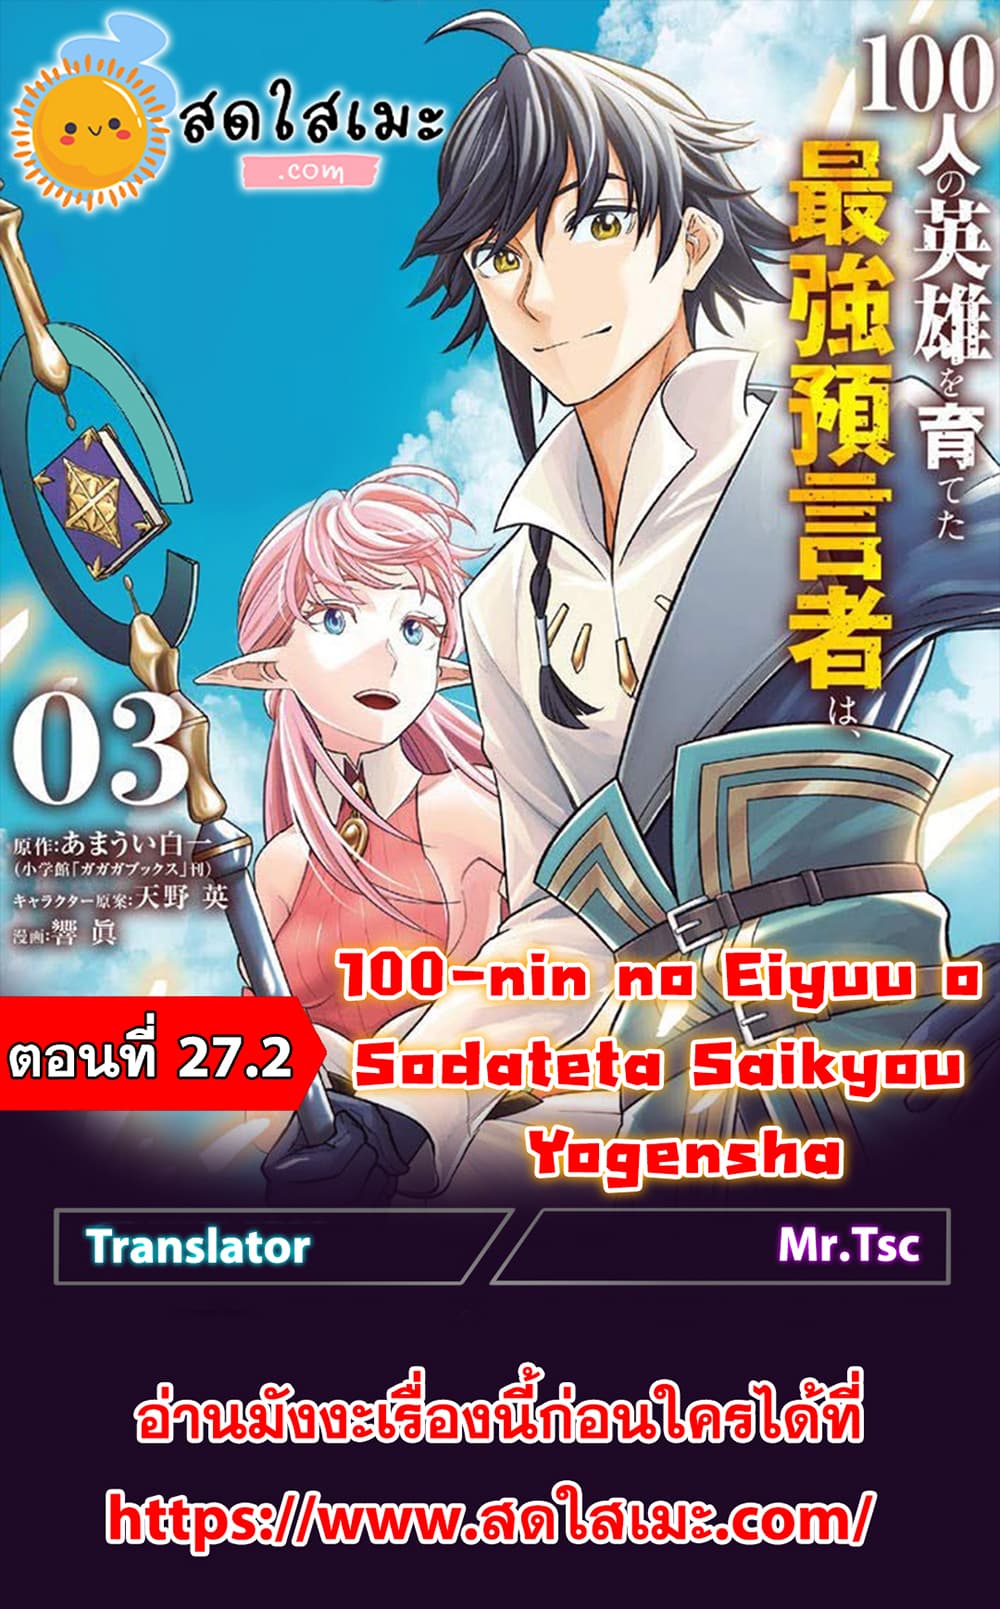 100 nin no Eiyuu o Sodateta Saikyou Yogensha wa 27.2 (1)